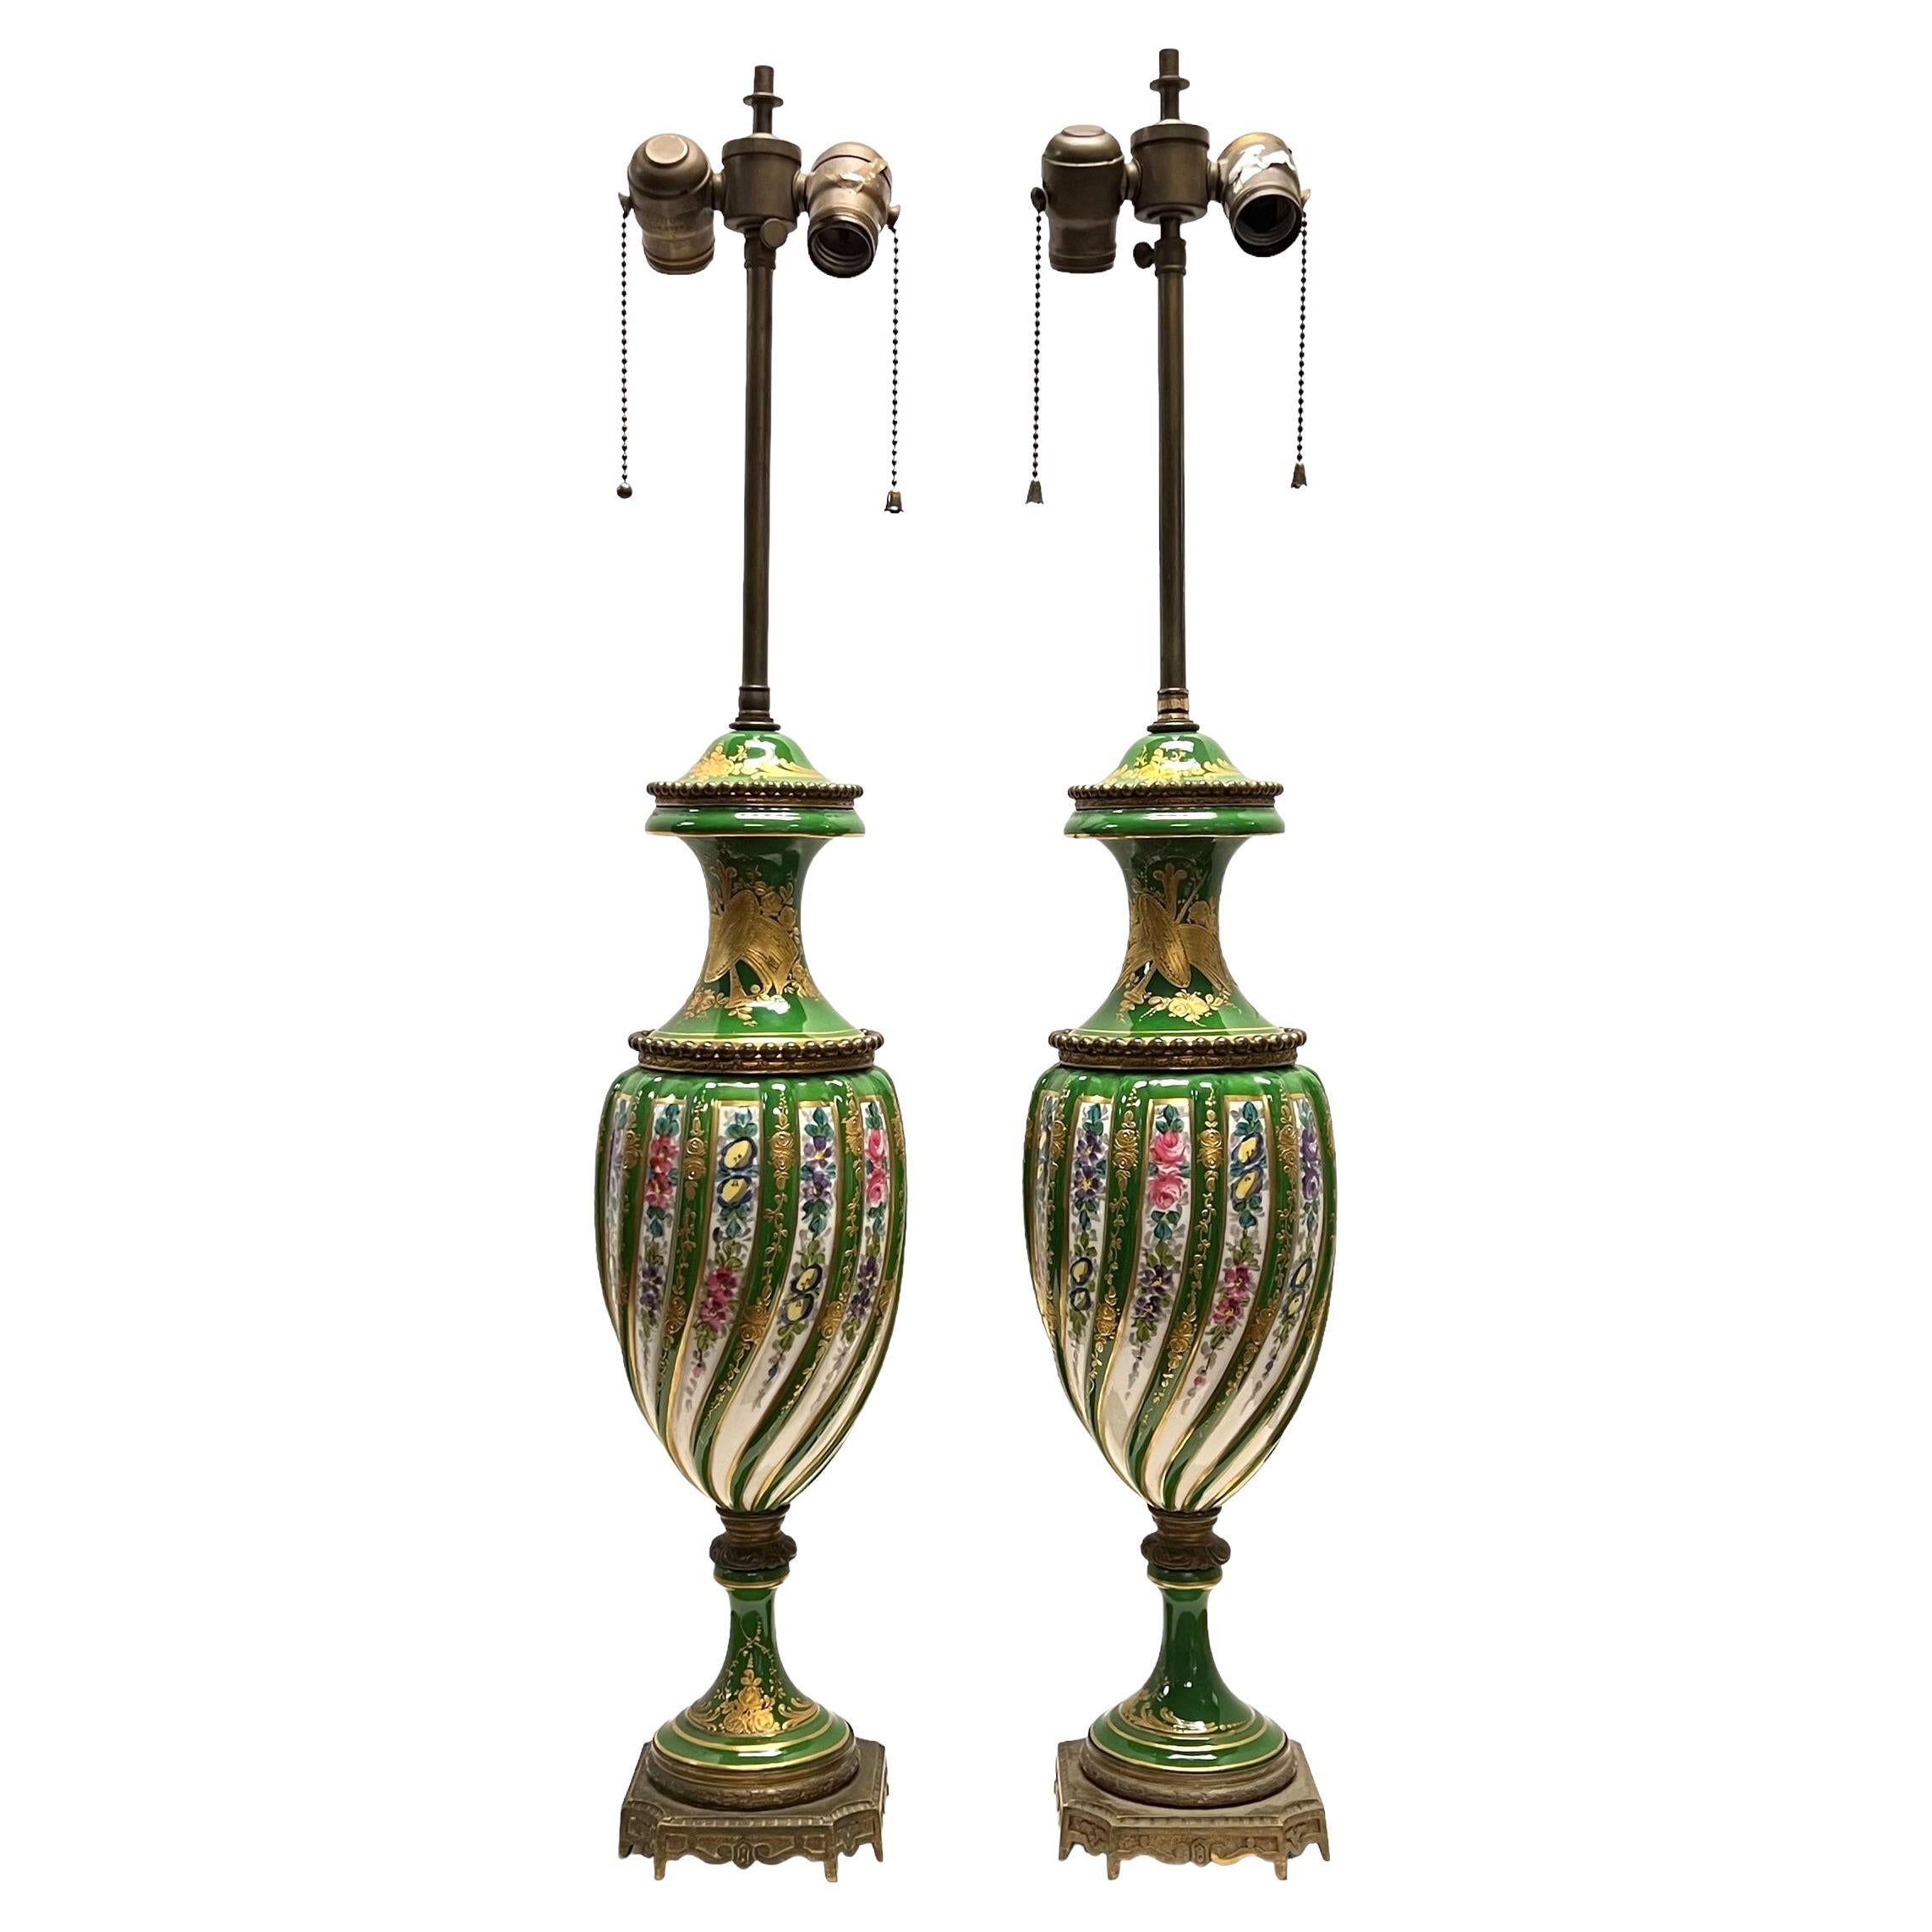 Paire de lampes de table en porcelaine peinte à motifs floraux, style Sèvres, France, 19e siècle